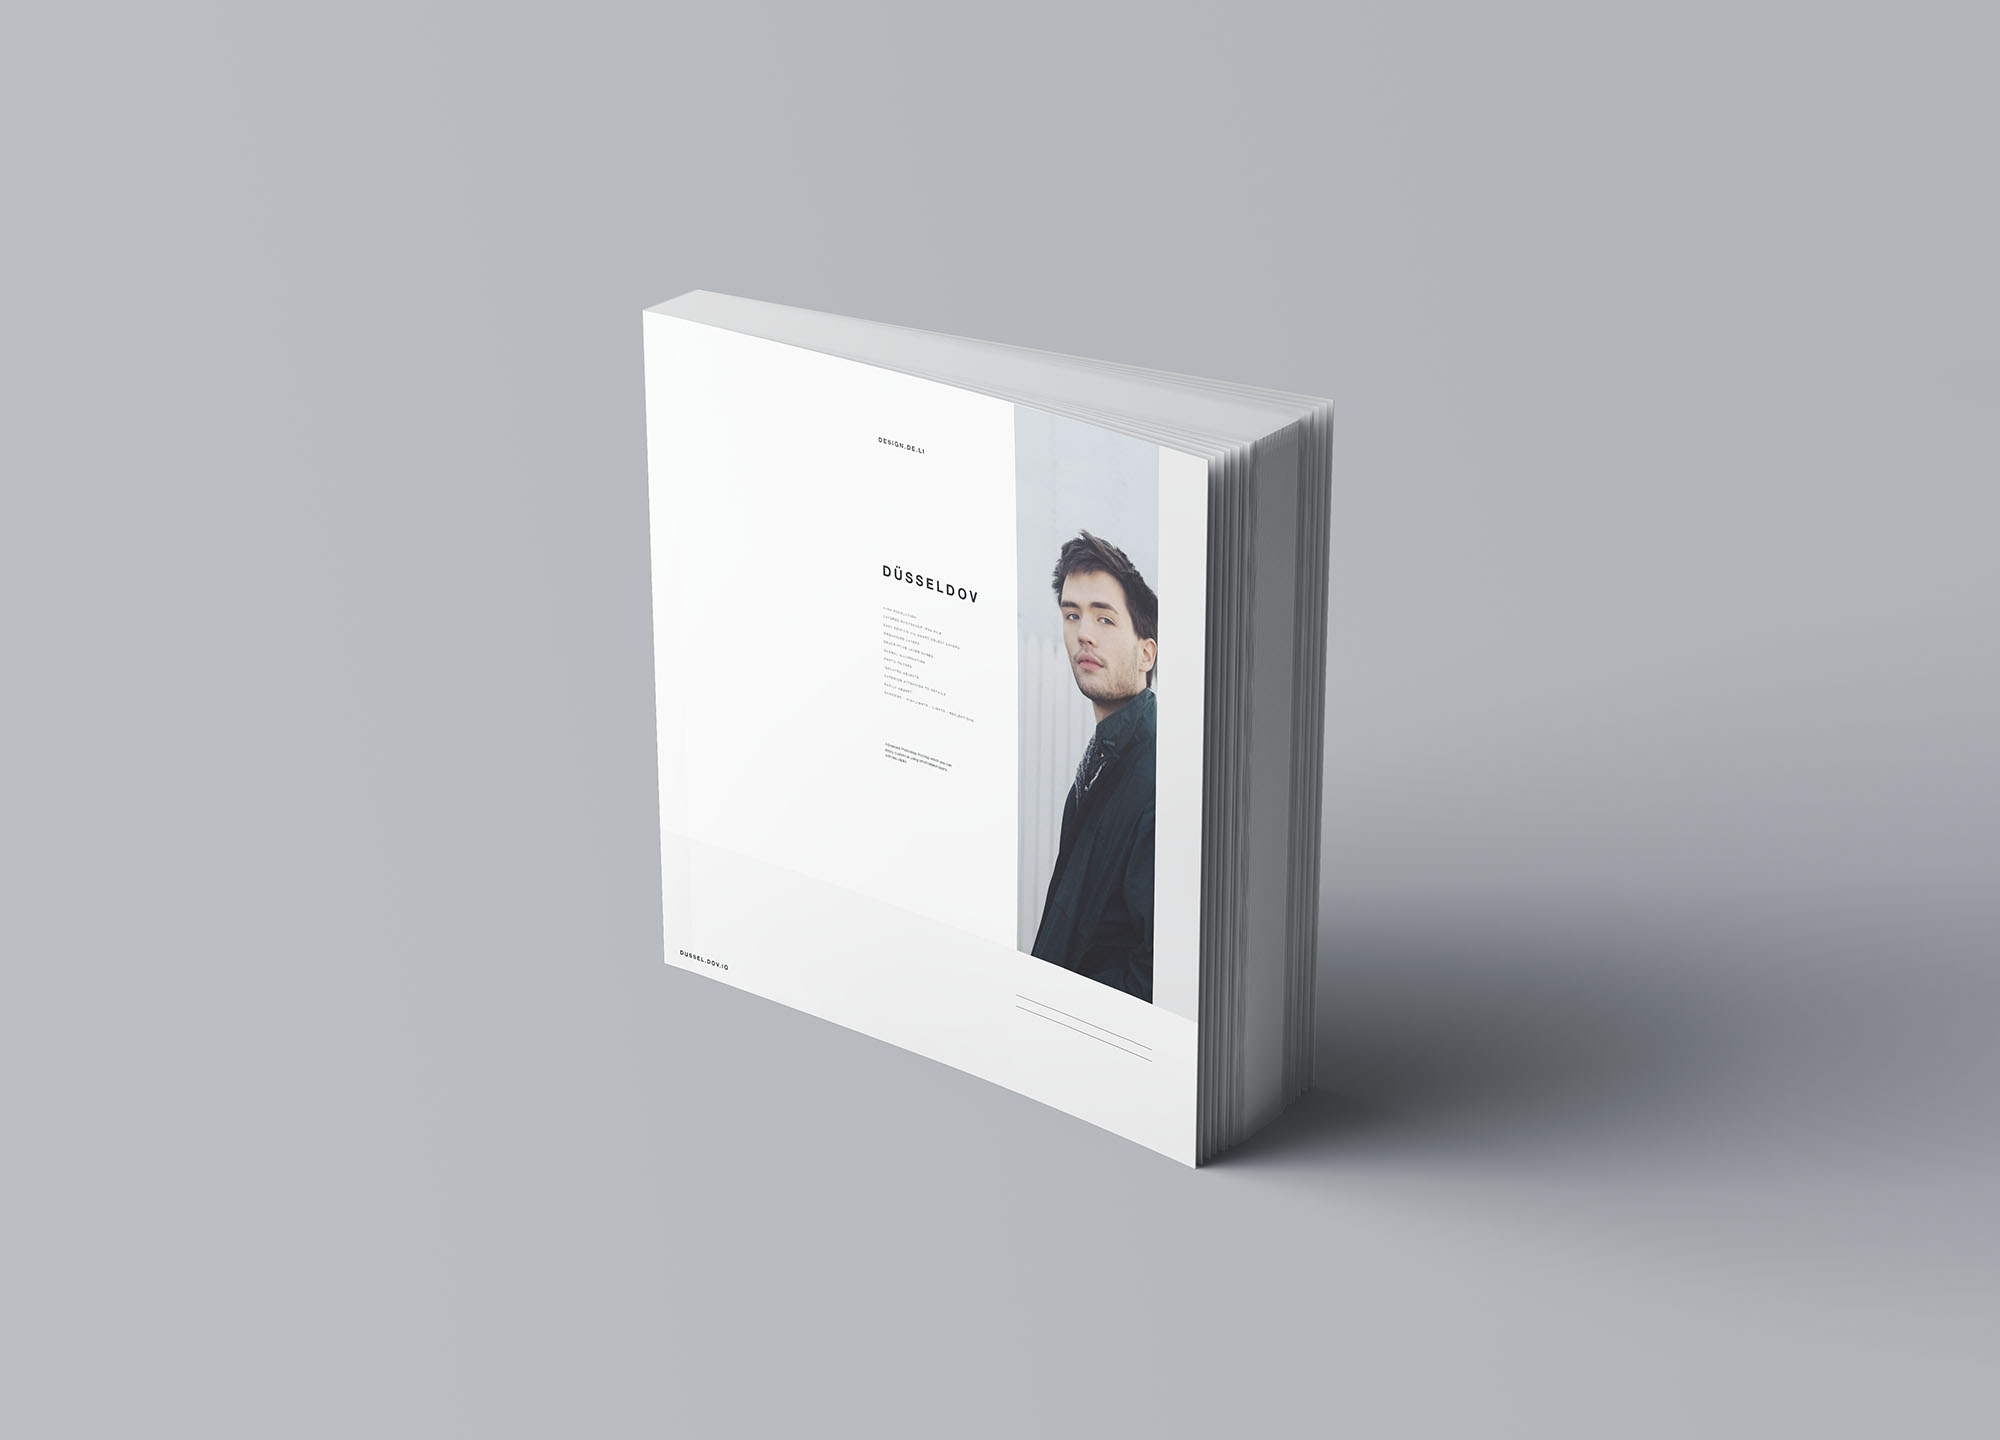 方形软封图书内页版式设计效果图样机素材库精选 Square Softcover Book Mockup插图(6)